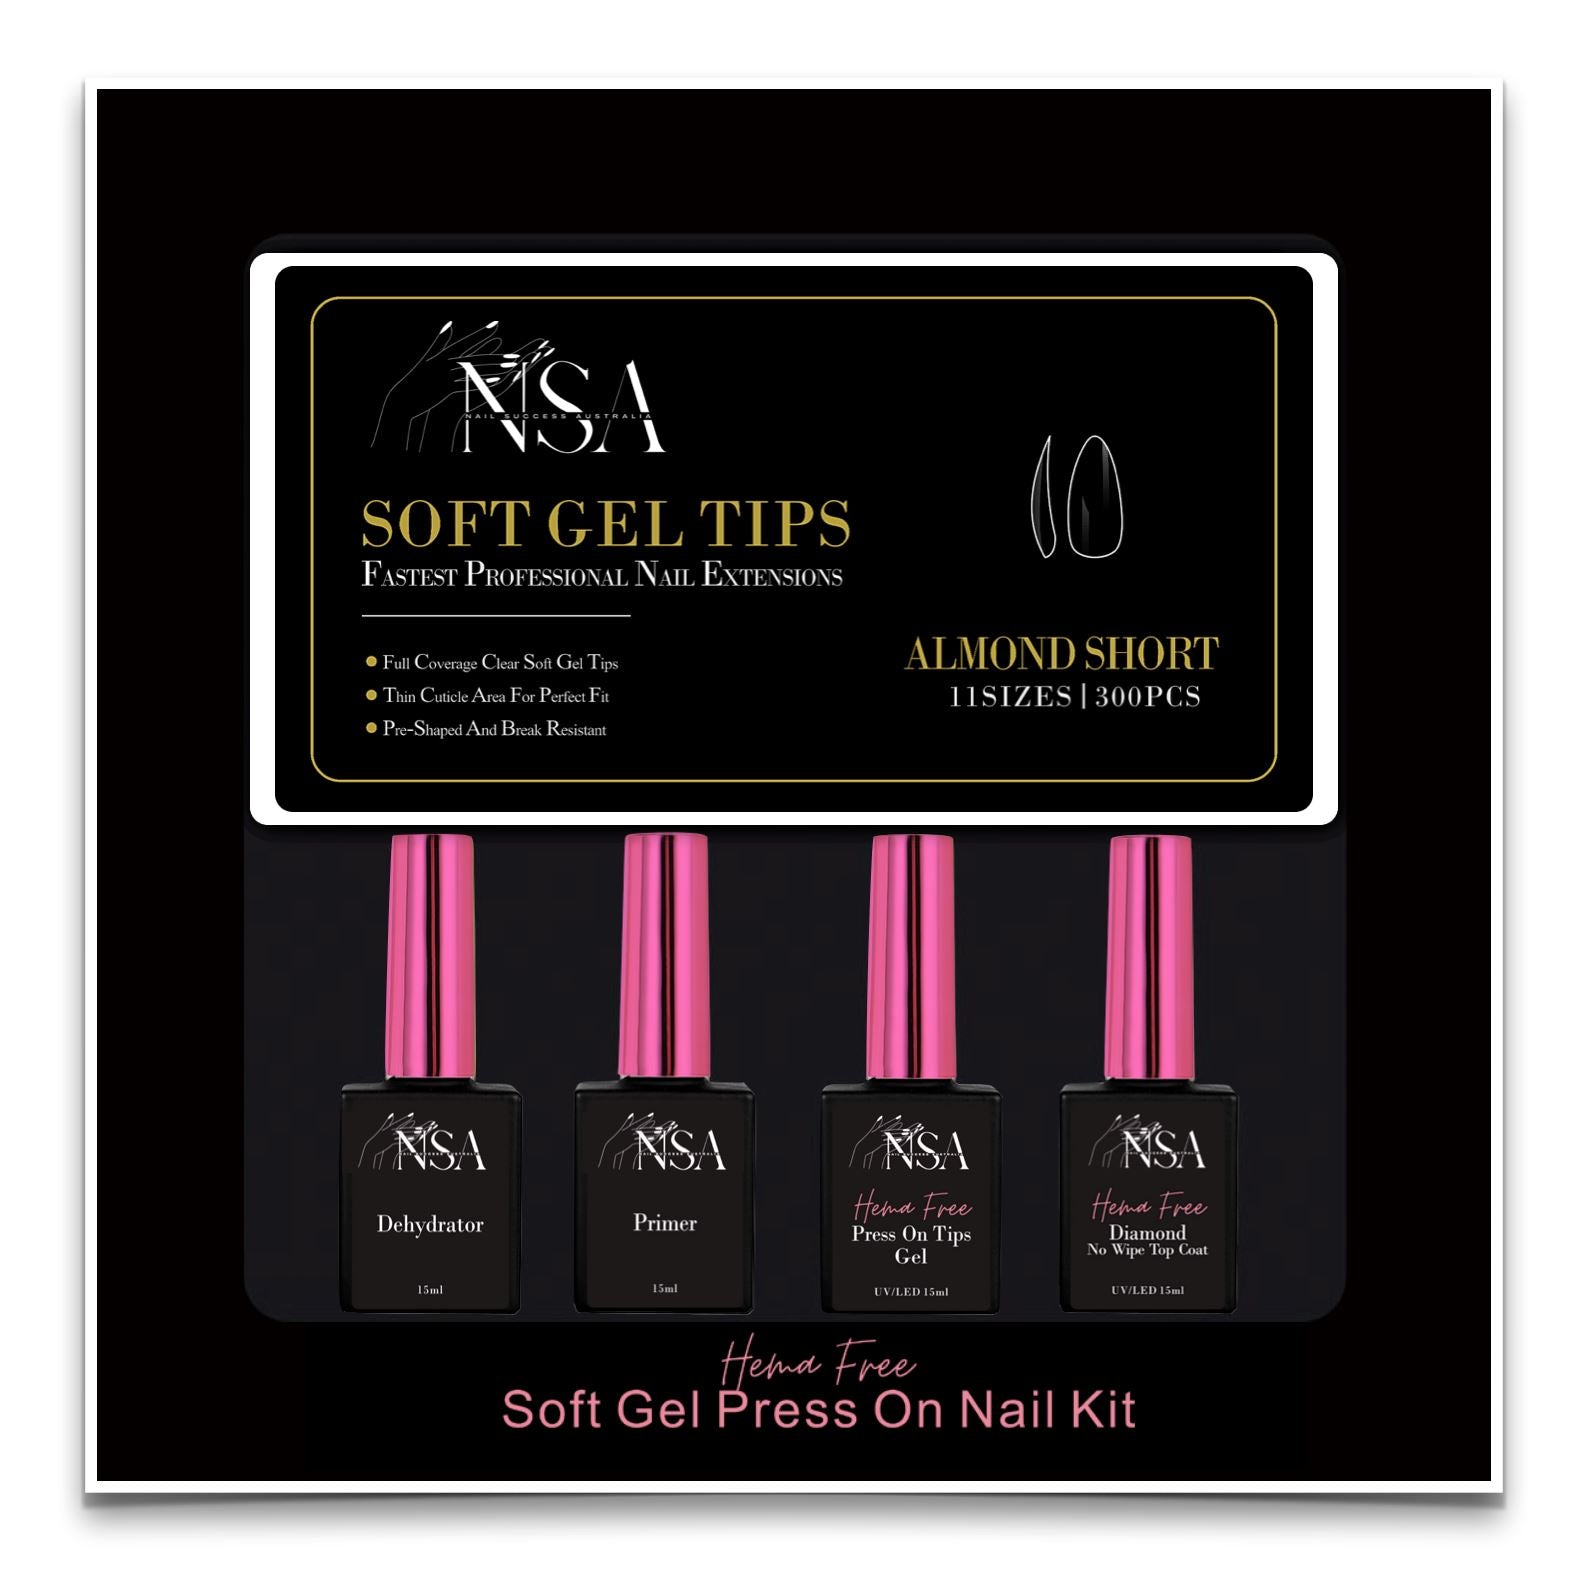 Soft Gel Press On Nail Kit - HEMA Free - NSI Australia